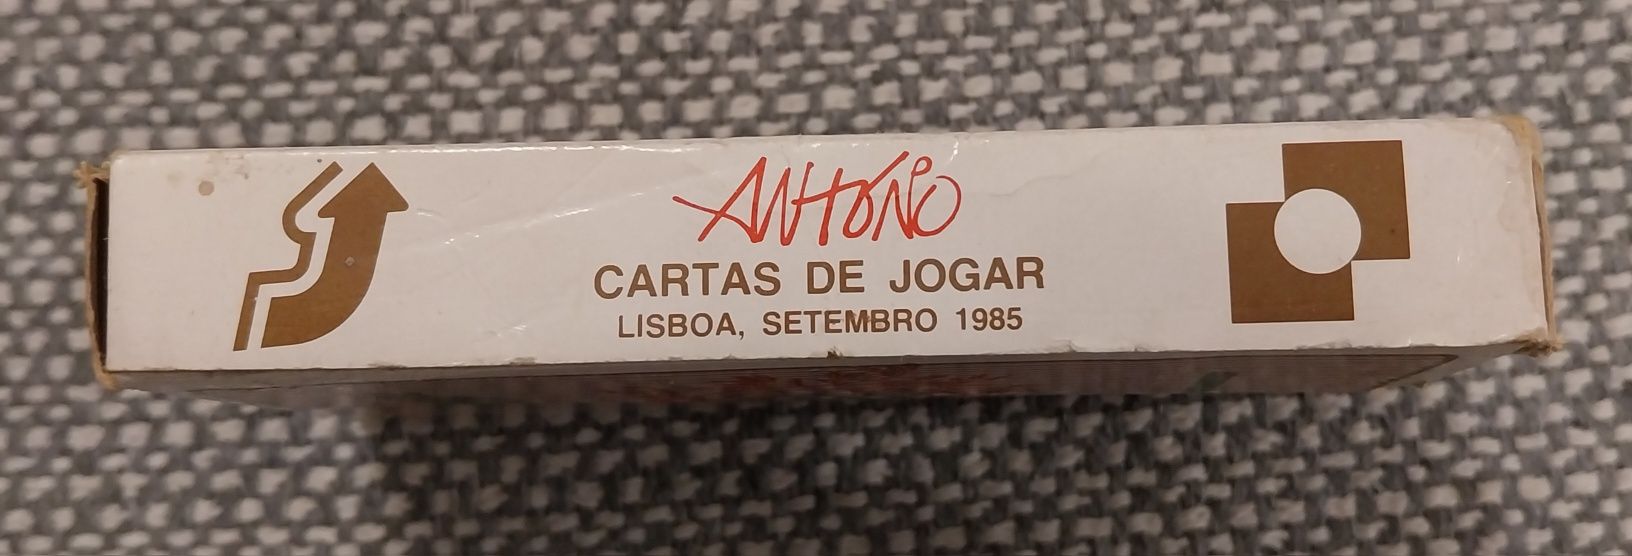 Vendo cartas de jogar "António" de 1985